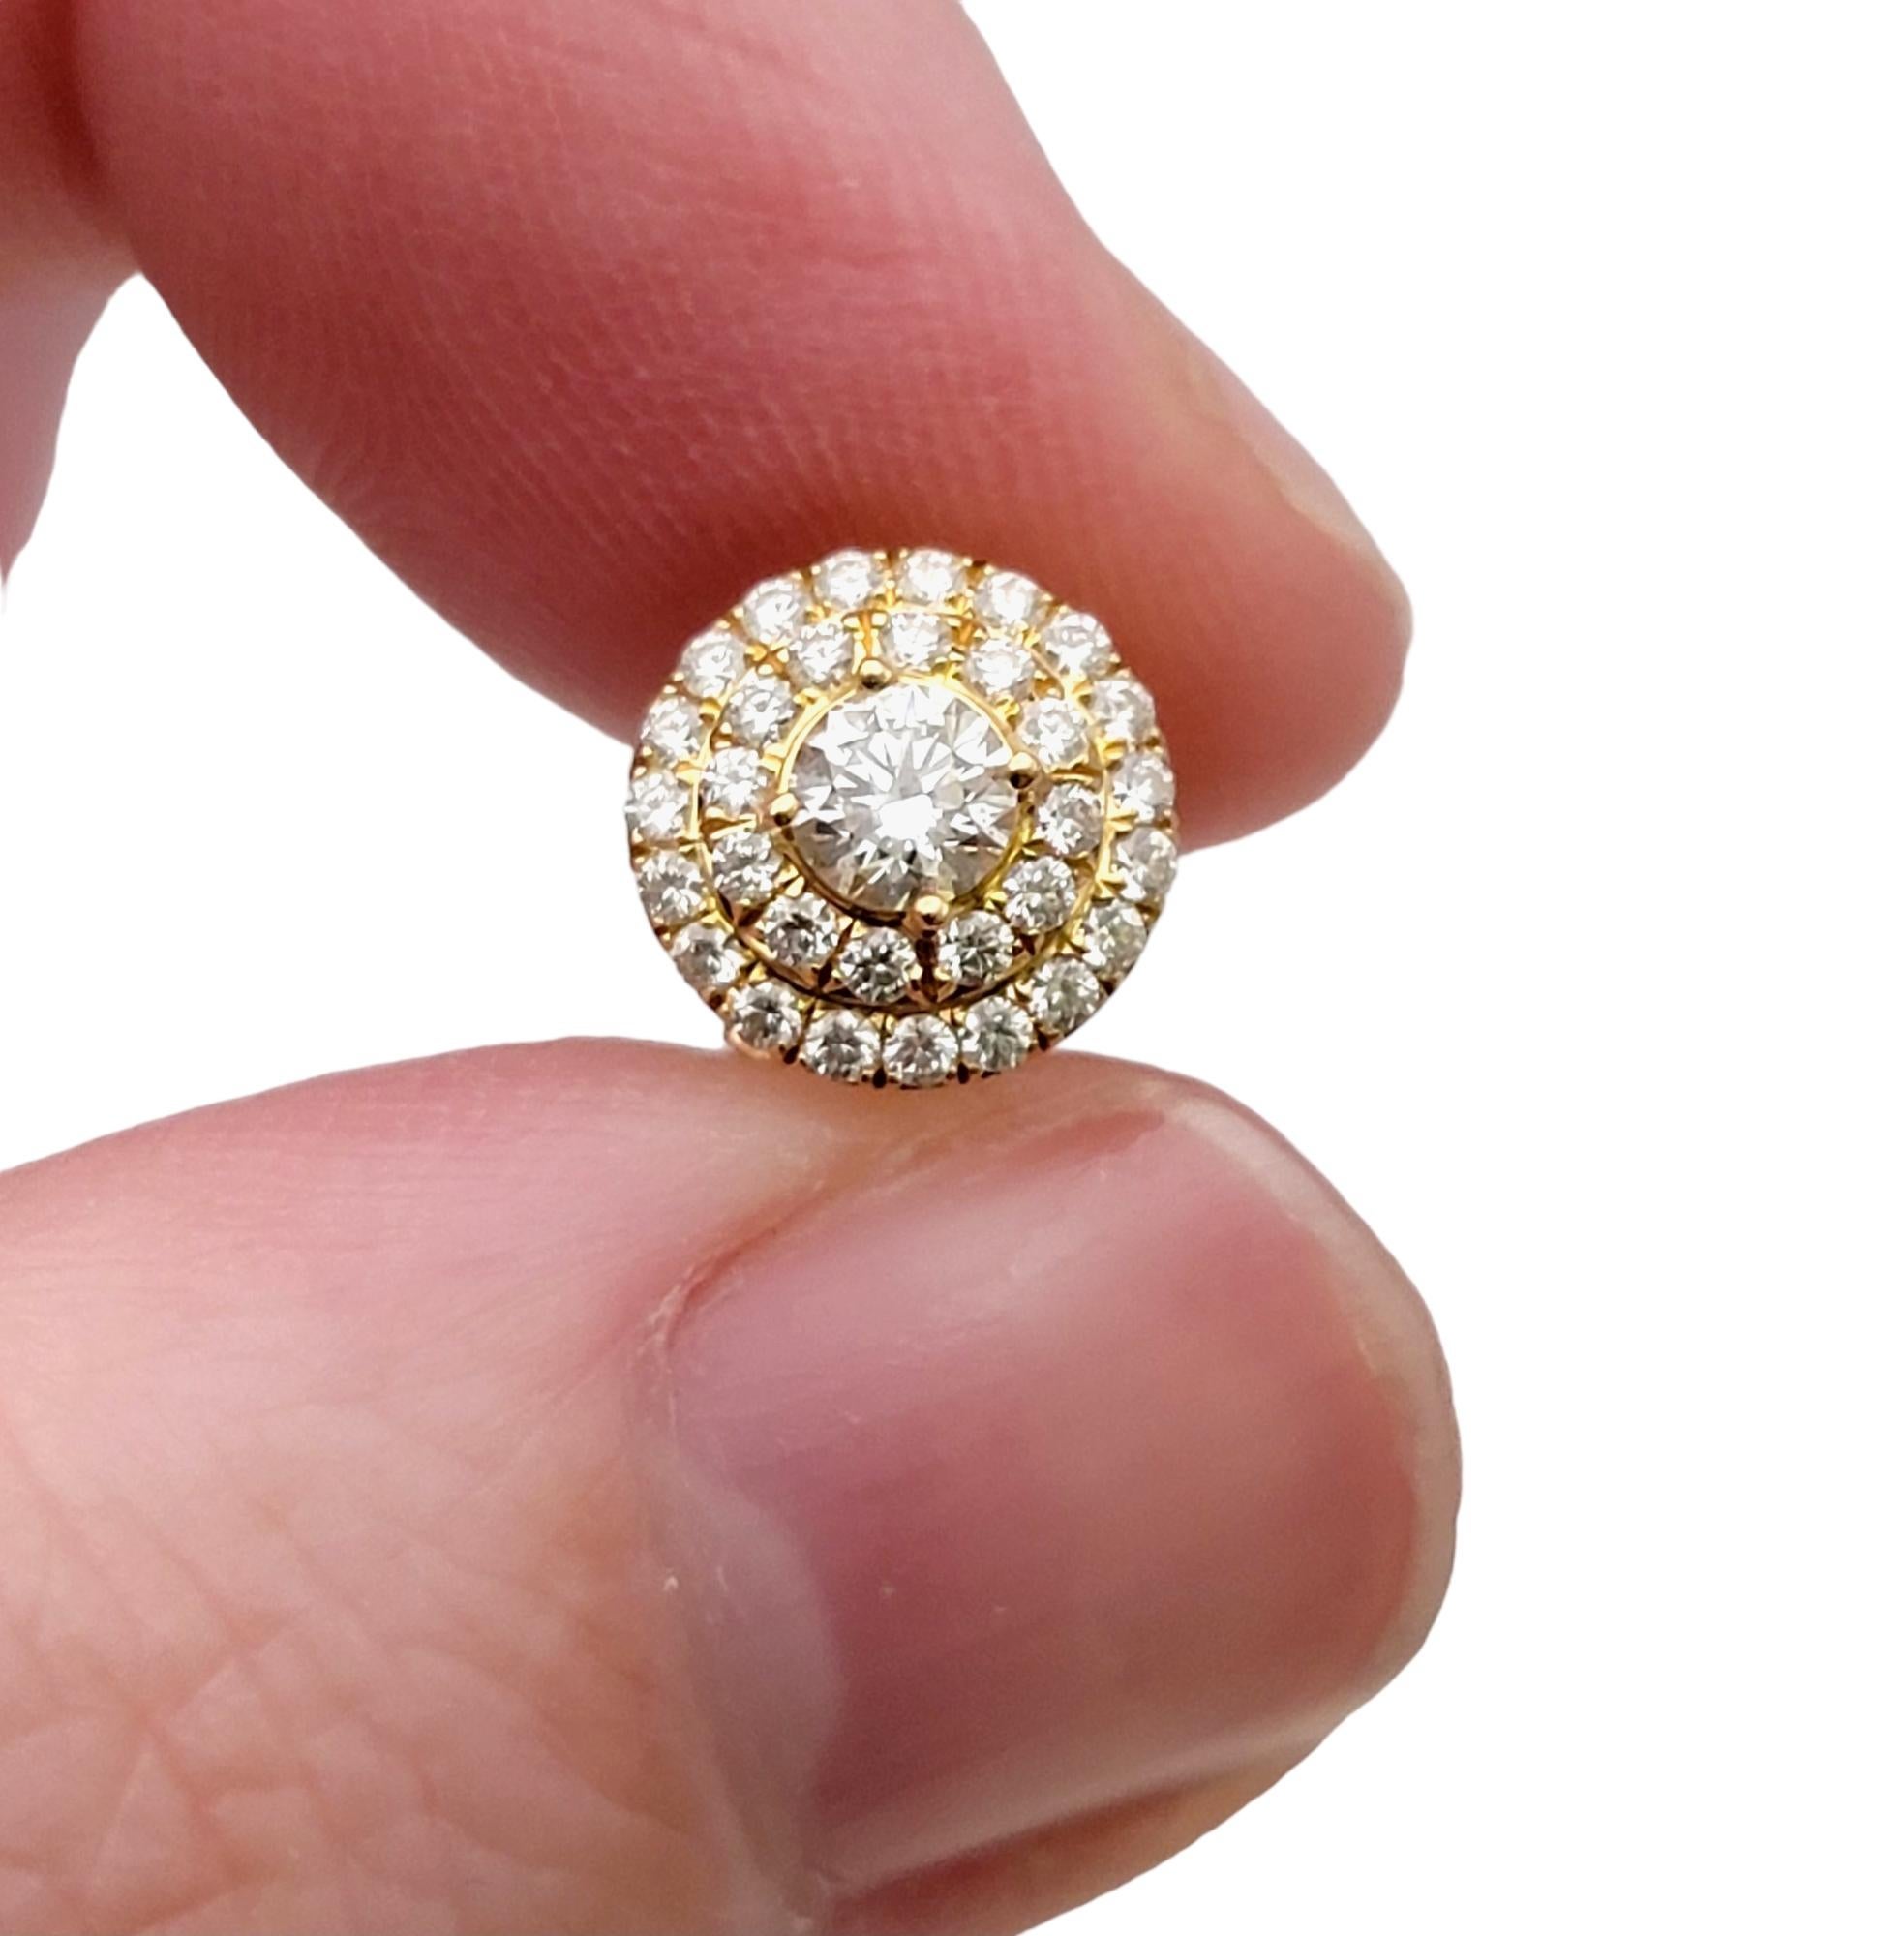 Tiffany & Co. Soleste Diamond Double Halo Stud Earrings in 18 Karat Yellow Gold  2